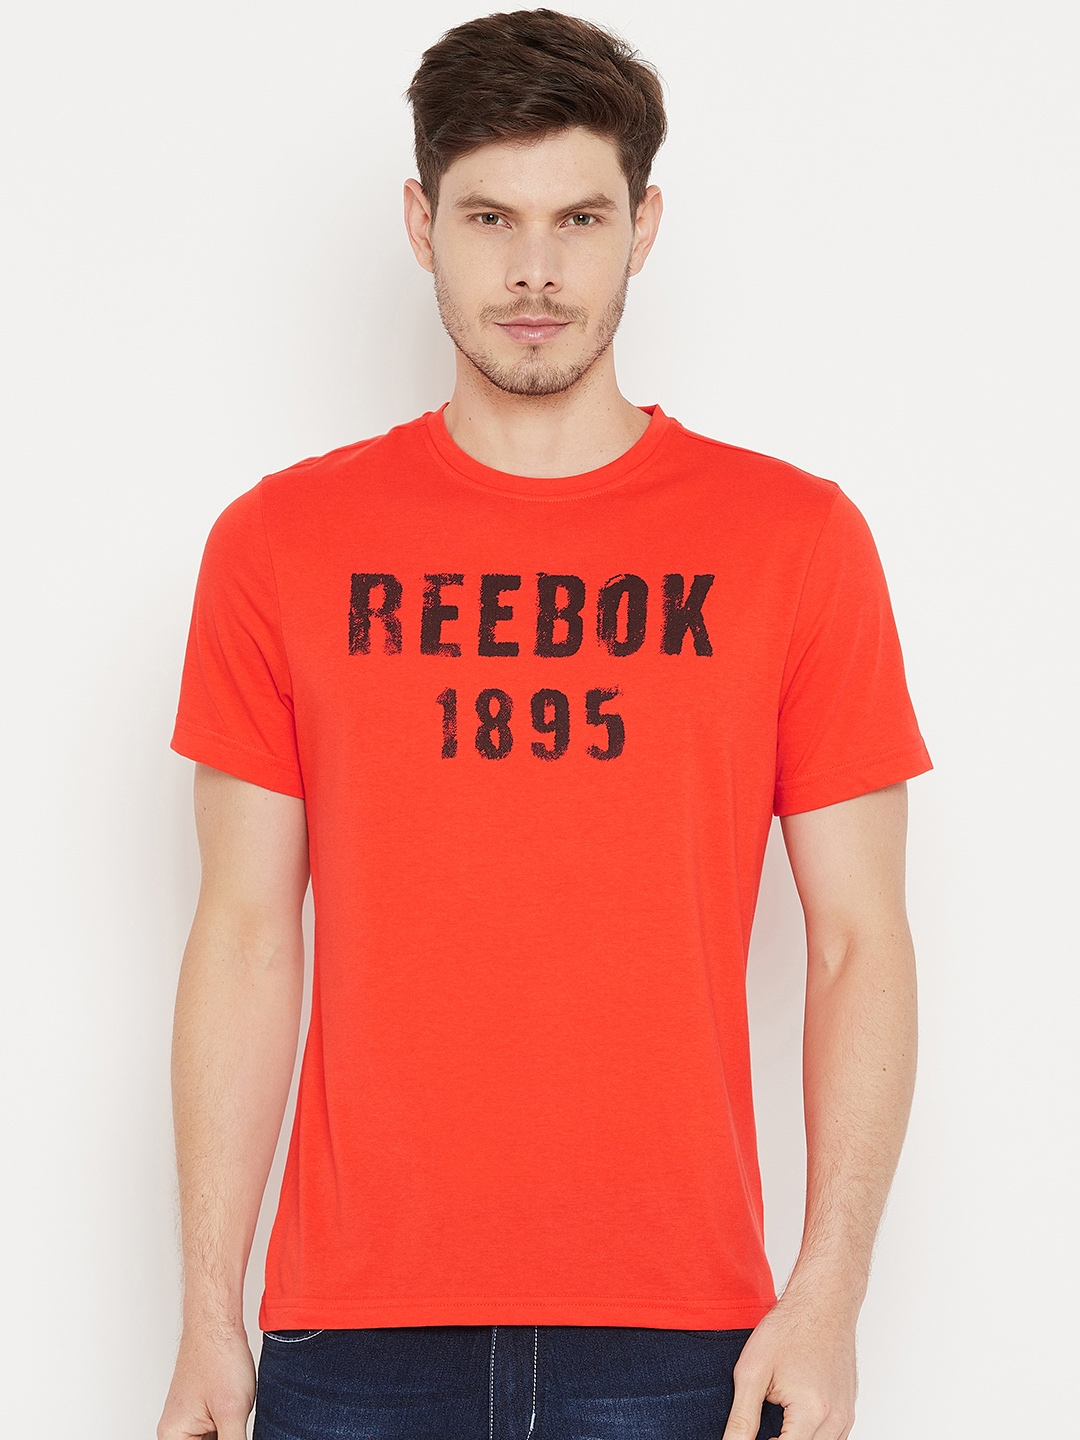 reebok 1895 shirt